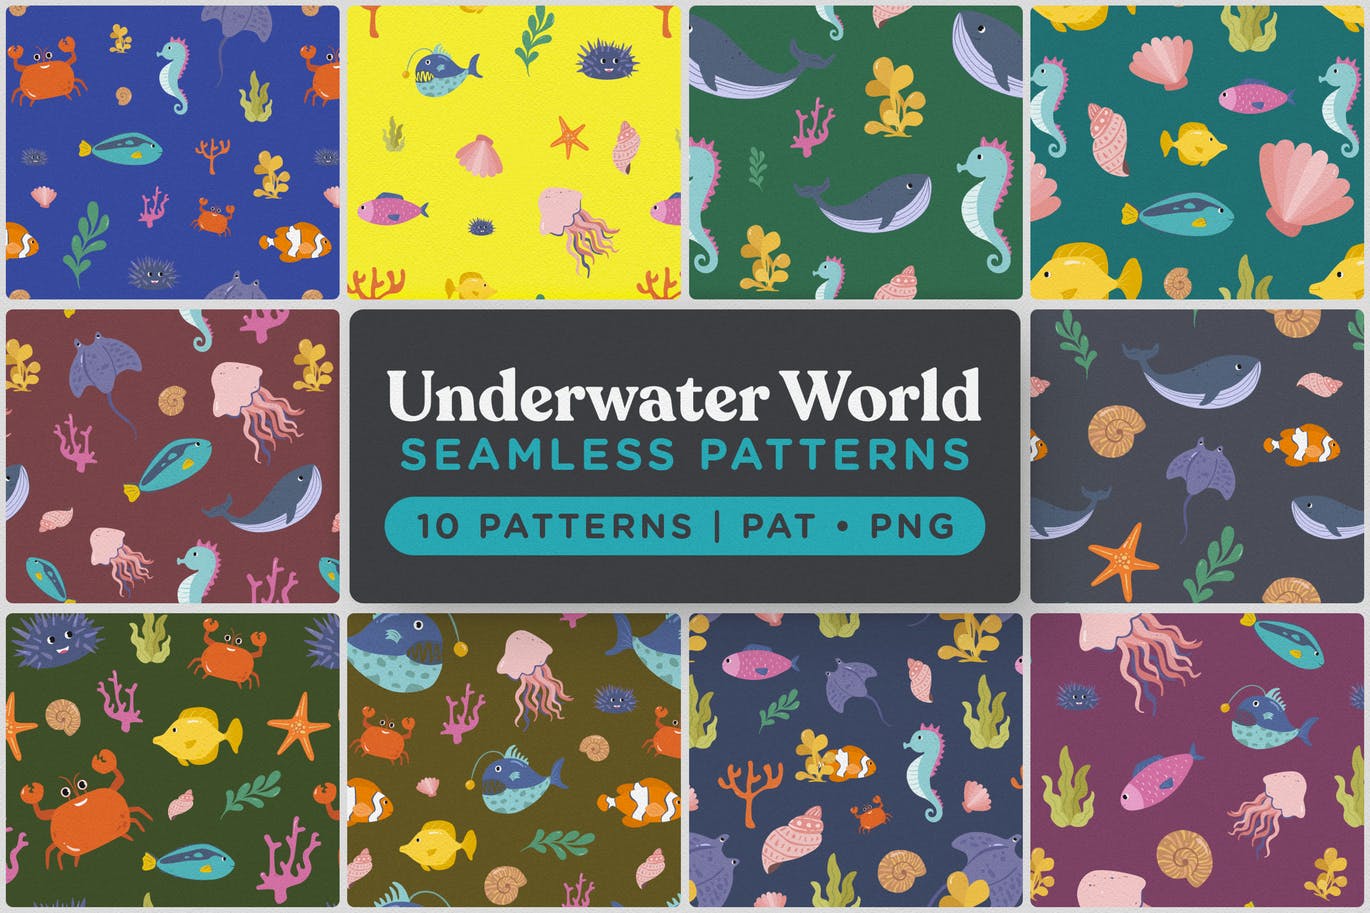 海底世界海底动物主题手绘图案无缝背景素材 Underwater World Seamless Patterns插图